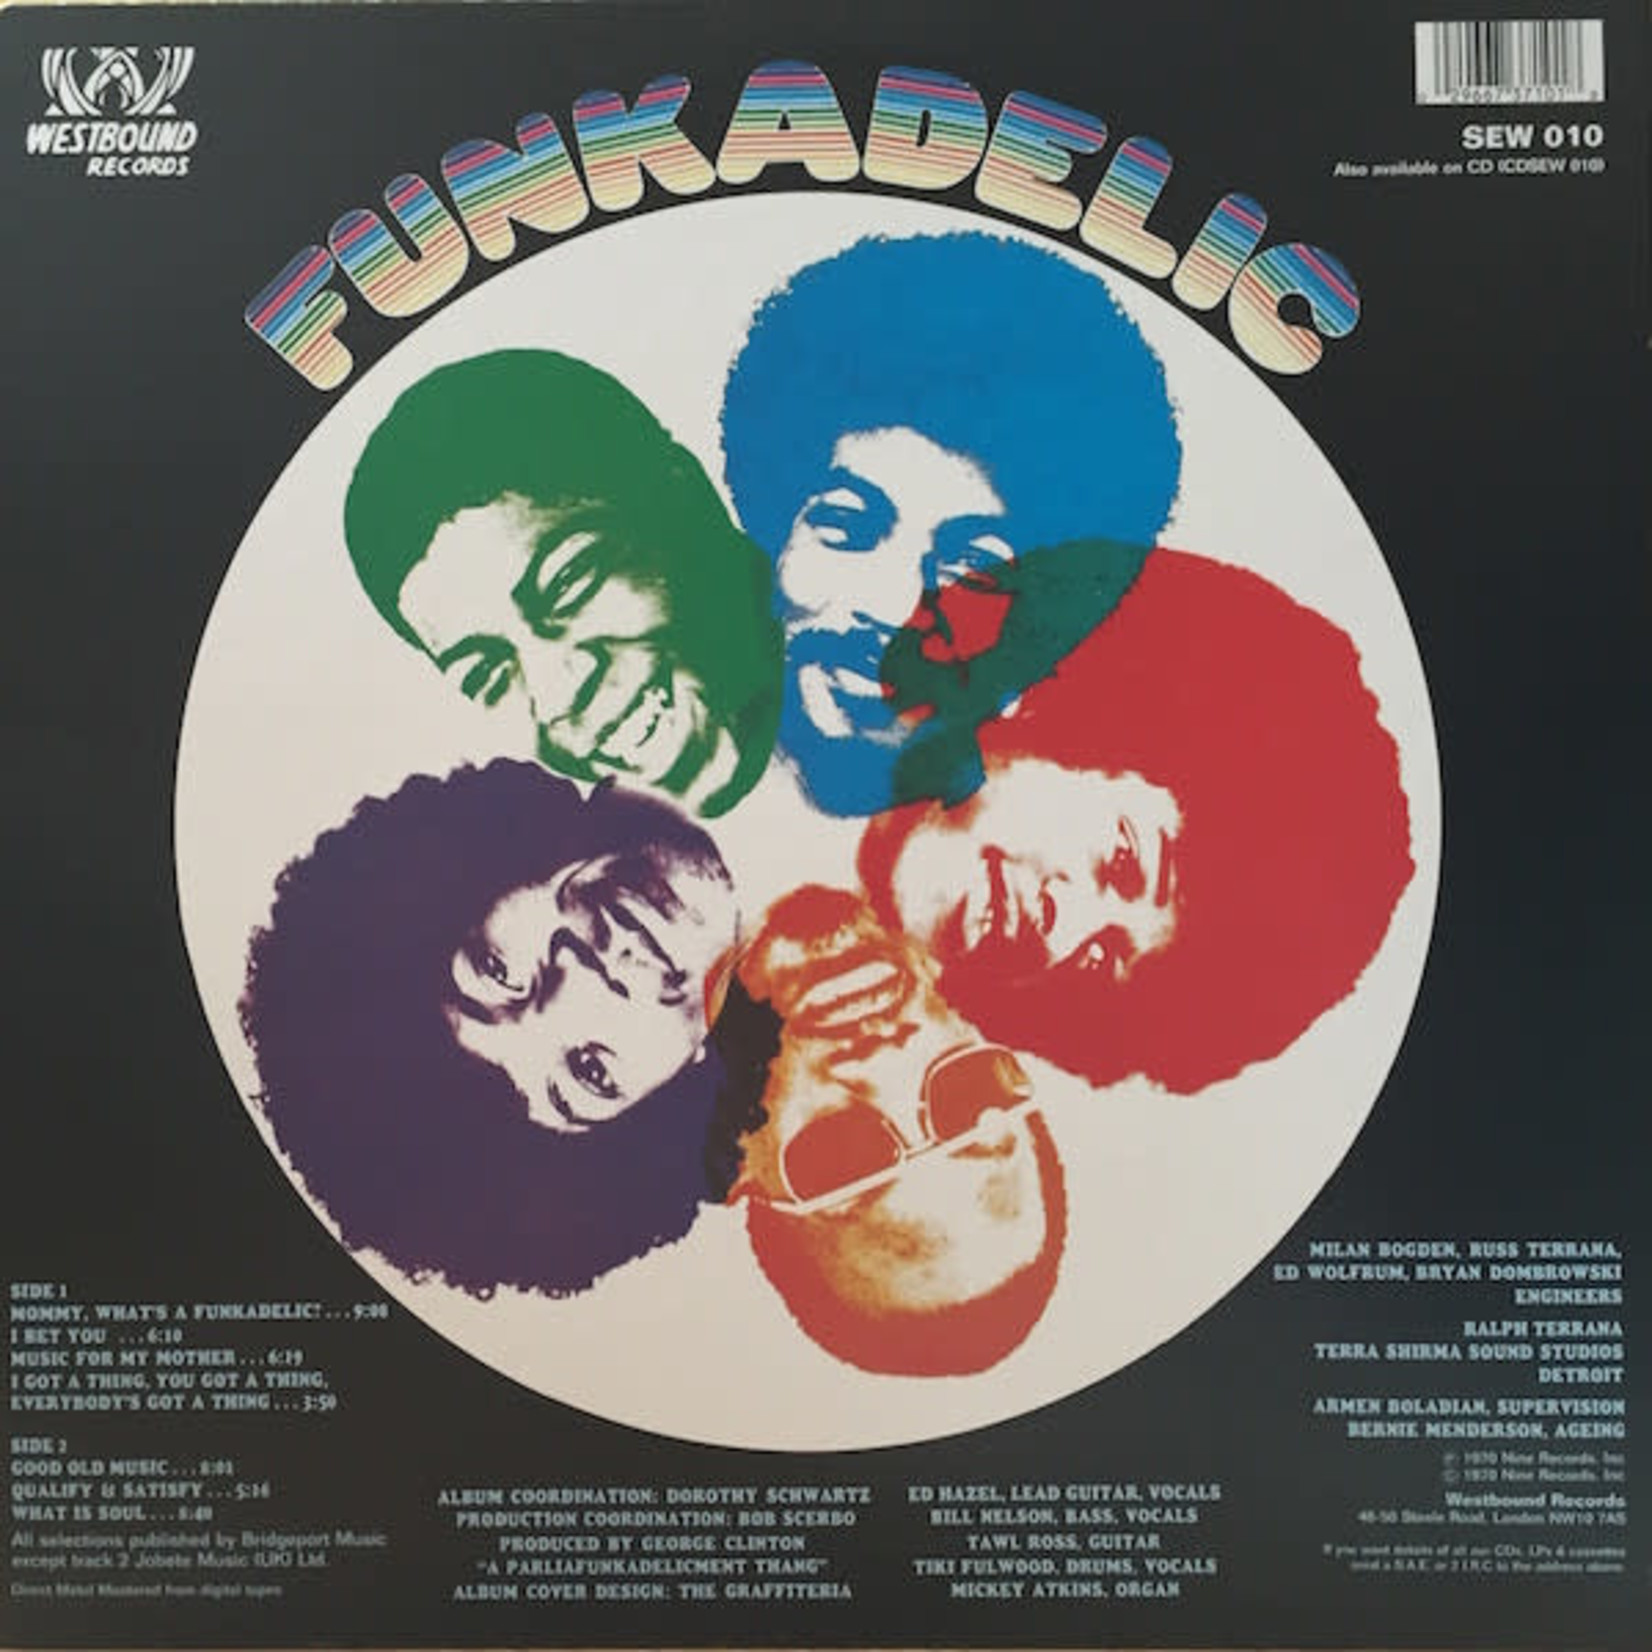 Westbound Funkadelic - Funkadelic (LP)